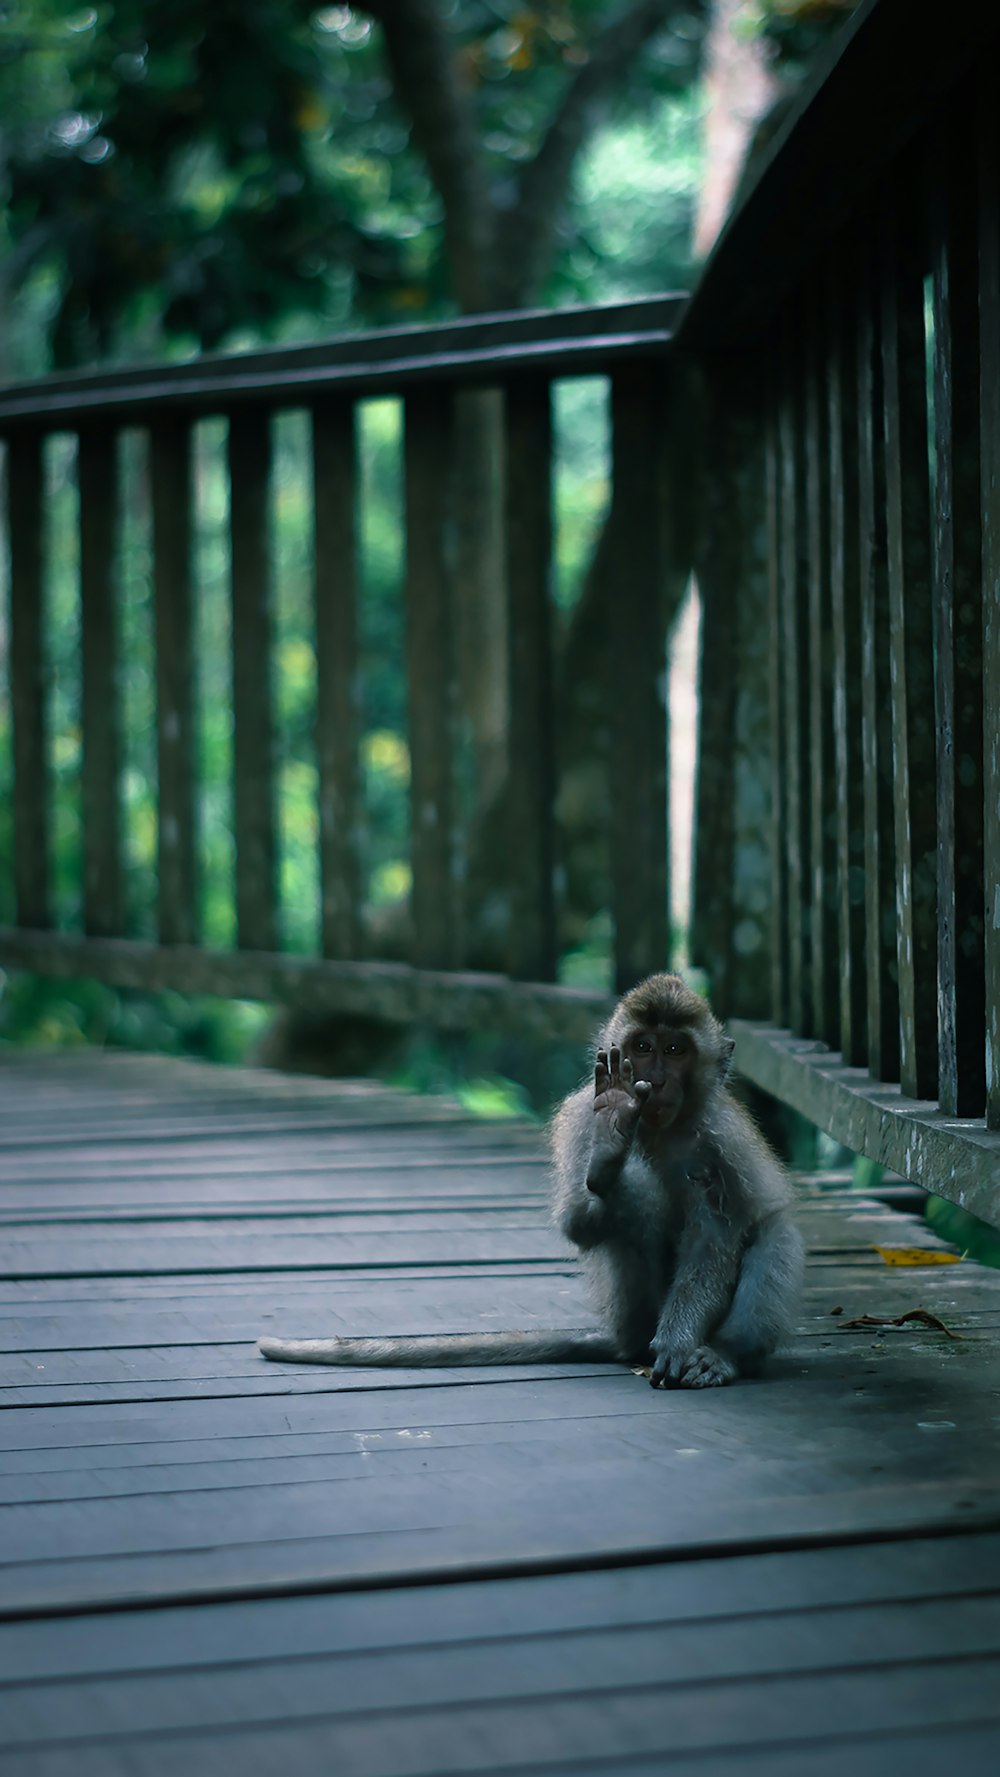 ウッドデッキに座る小猿